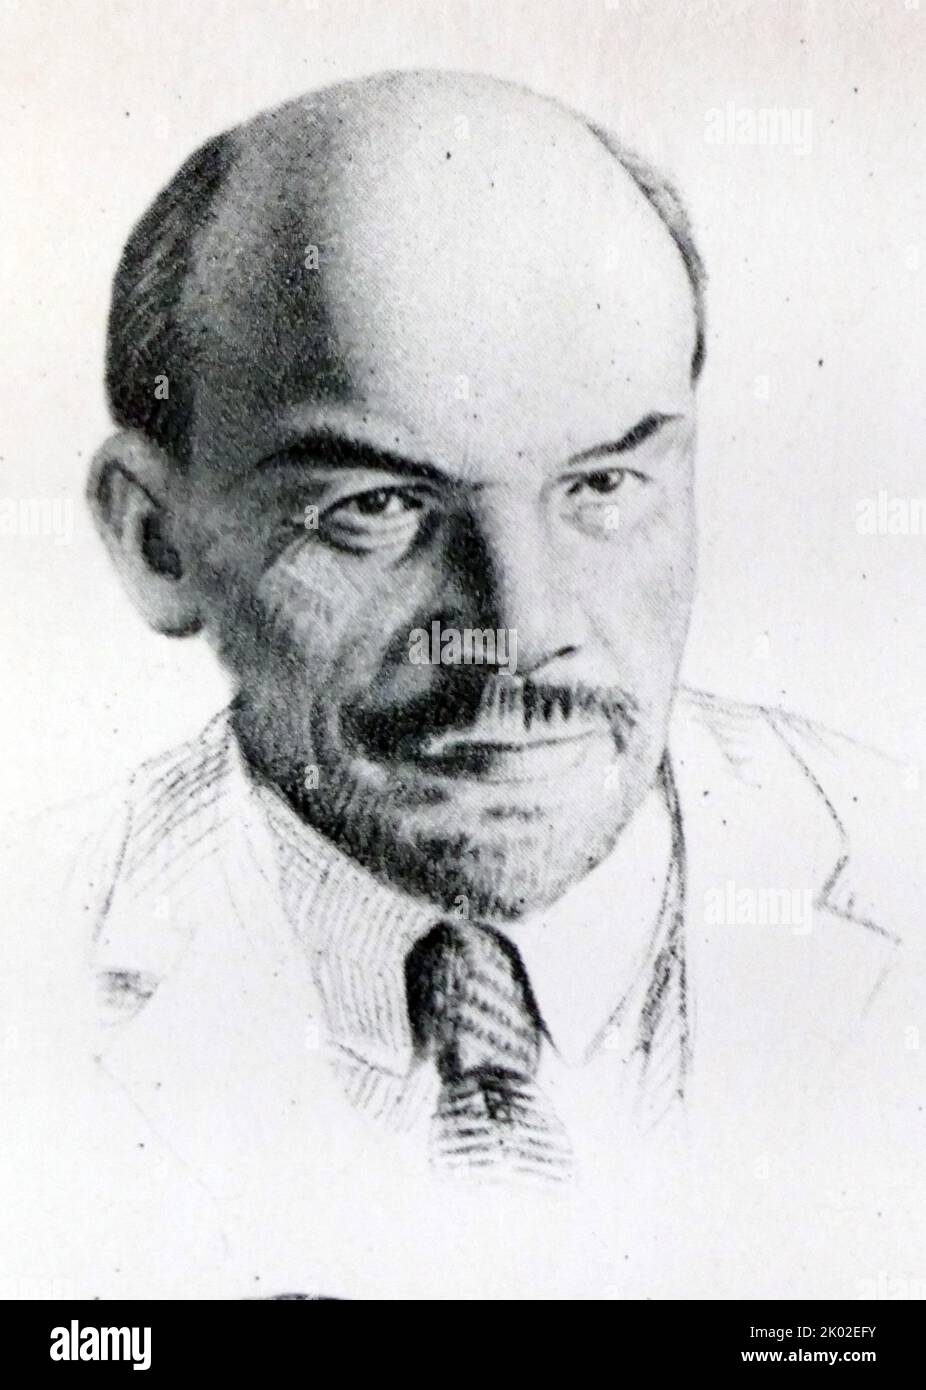 Vladimir Ilyich Ulyanov (Lenin, 22 aprile 1870 – 21 gennaio 1924) è stato un . Fu capo di governo della Russia sovietica dal 1917 al 1924 e dell'Unione sovietica dal 1922 al 1924 Foto Stock